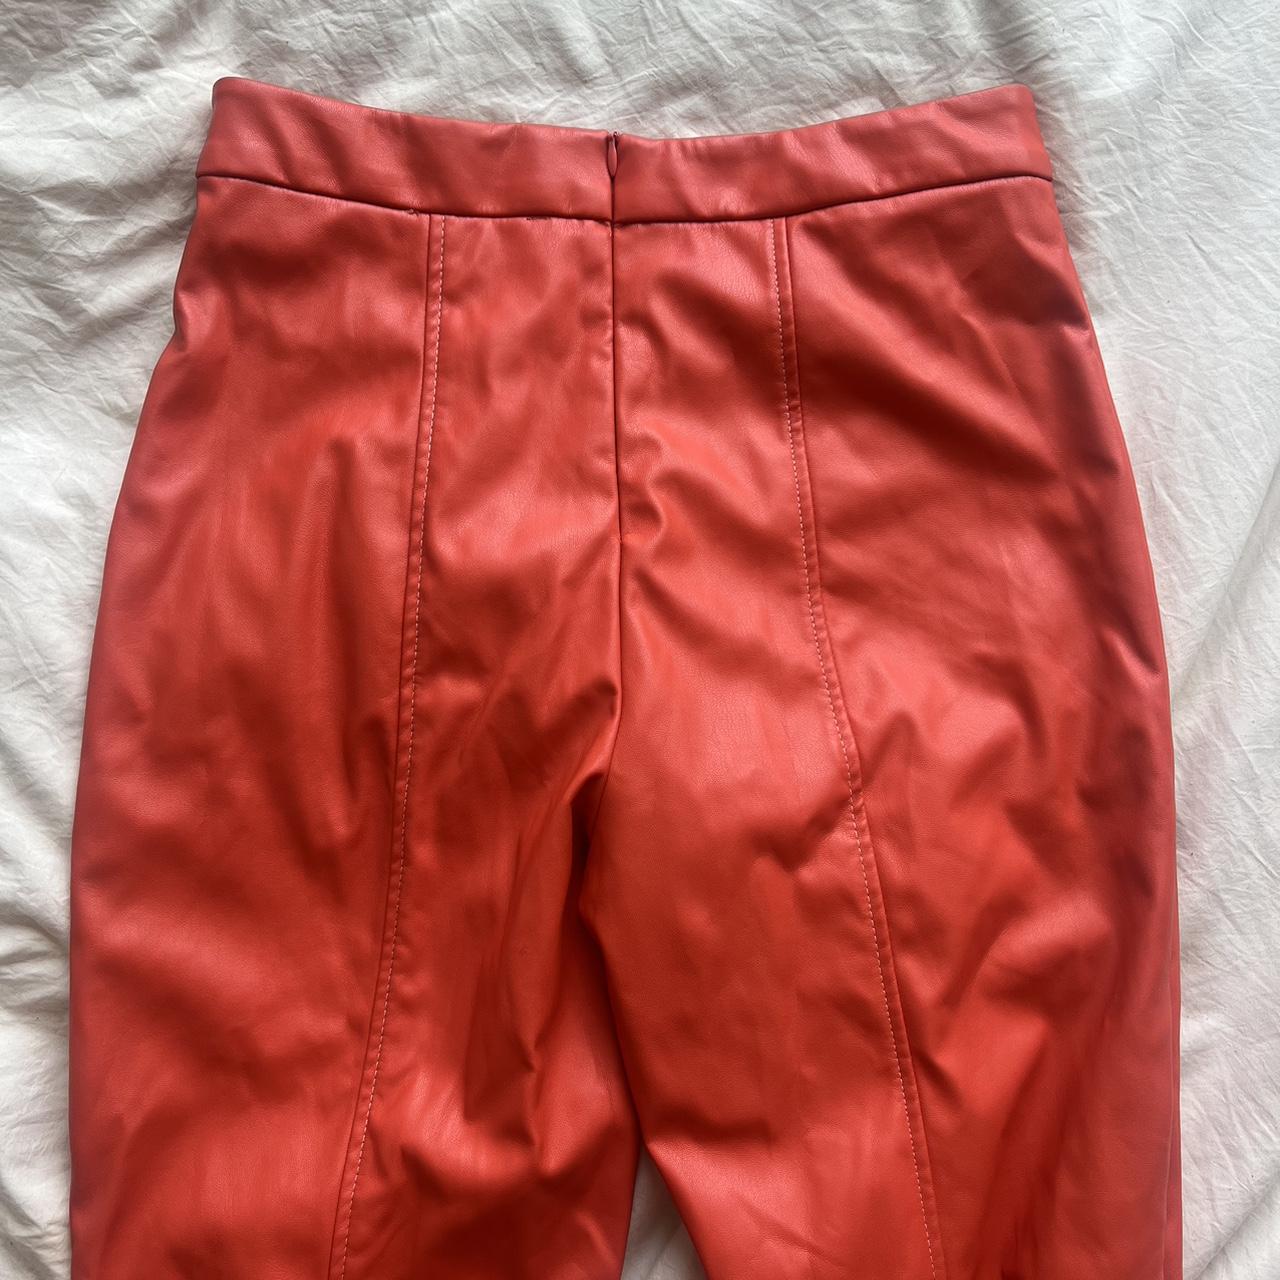 Hosbjerg Women's Orange Trousers (3)